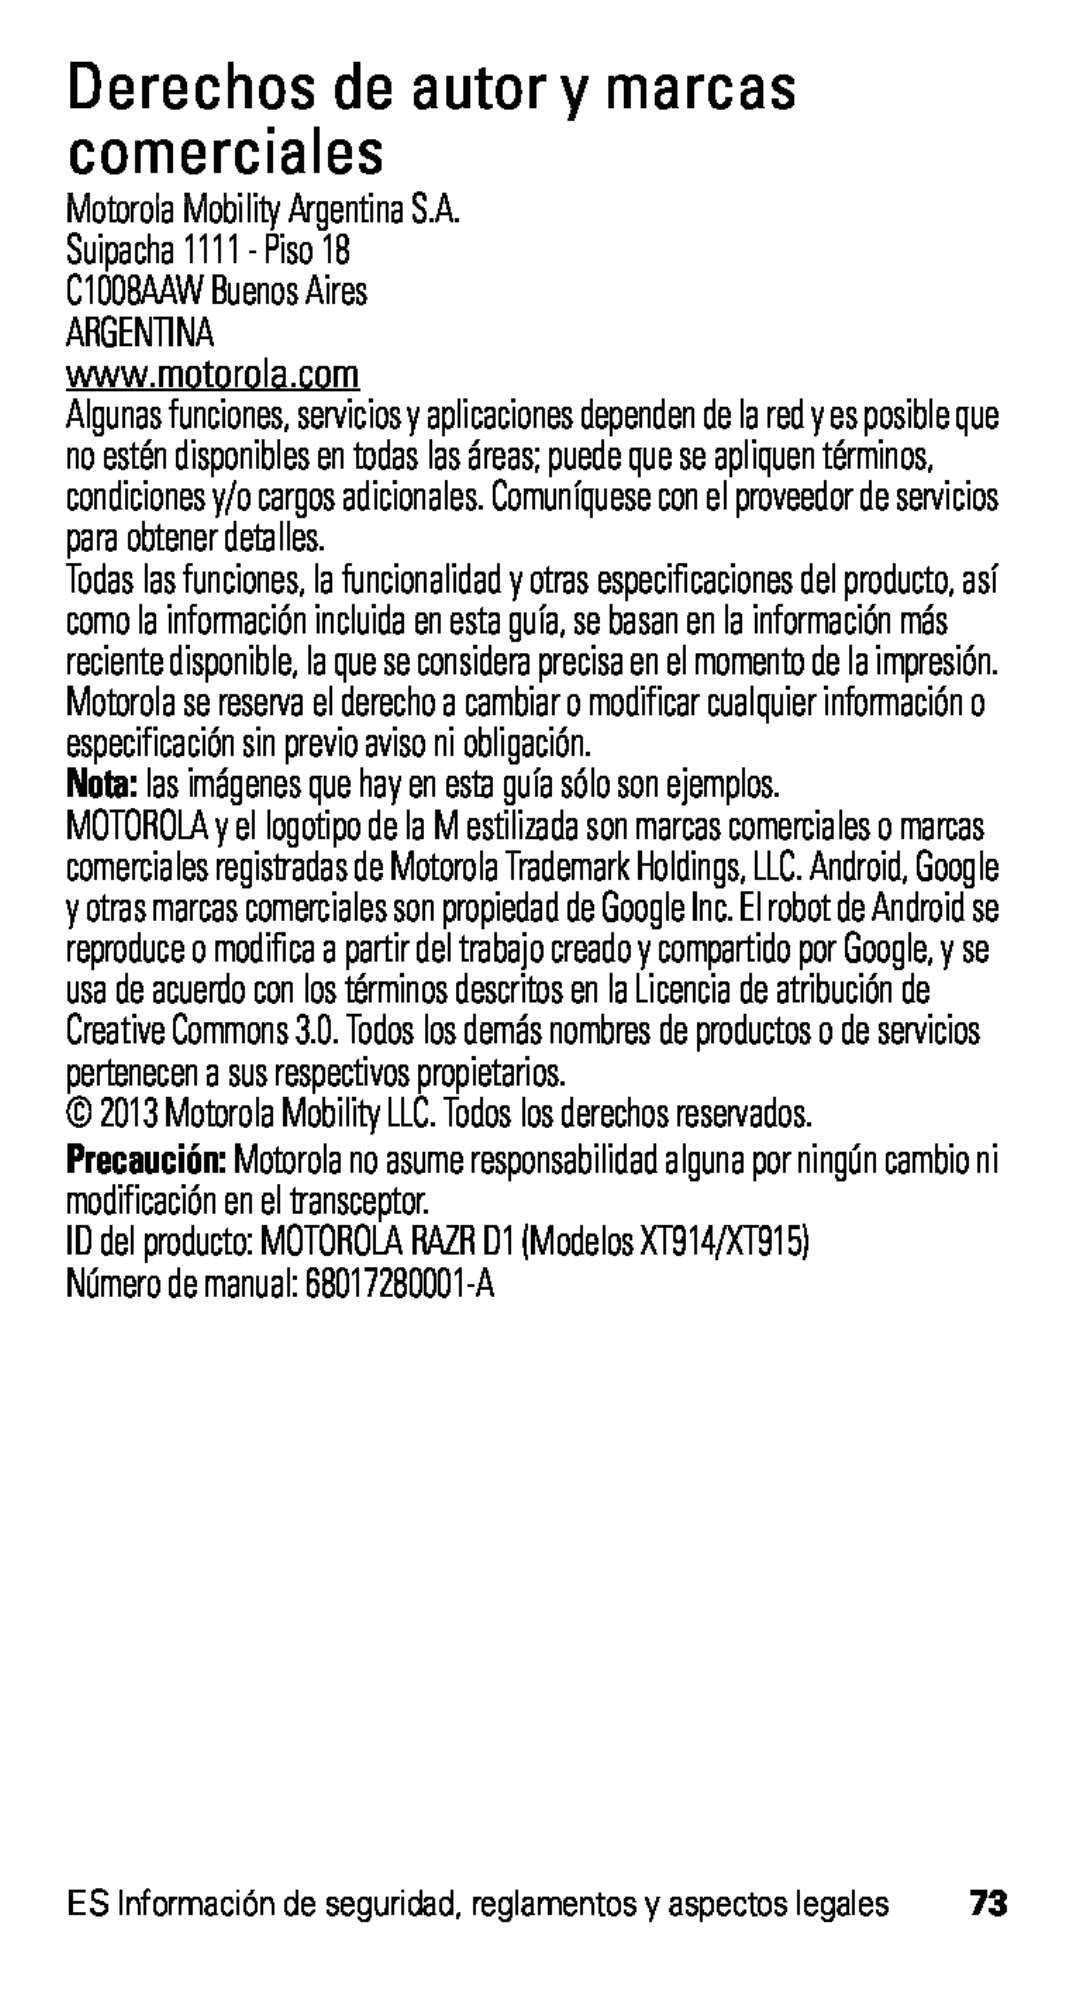 Motorola D1, XT915 manual Derechos de autor y marcas comerciales, Motorola Mobility Argentina S.A Suipacha 1111 - Piso 